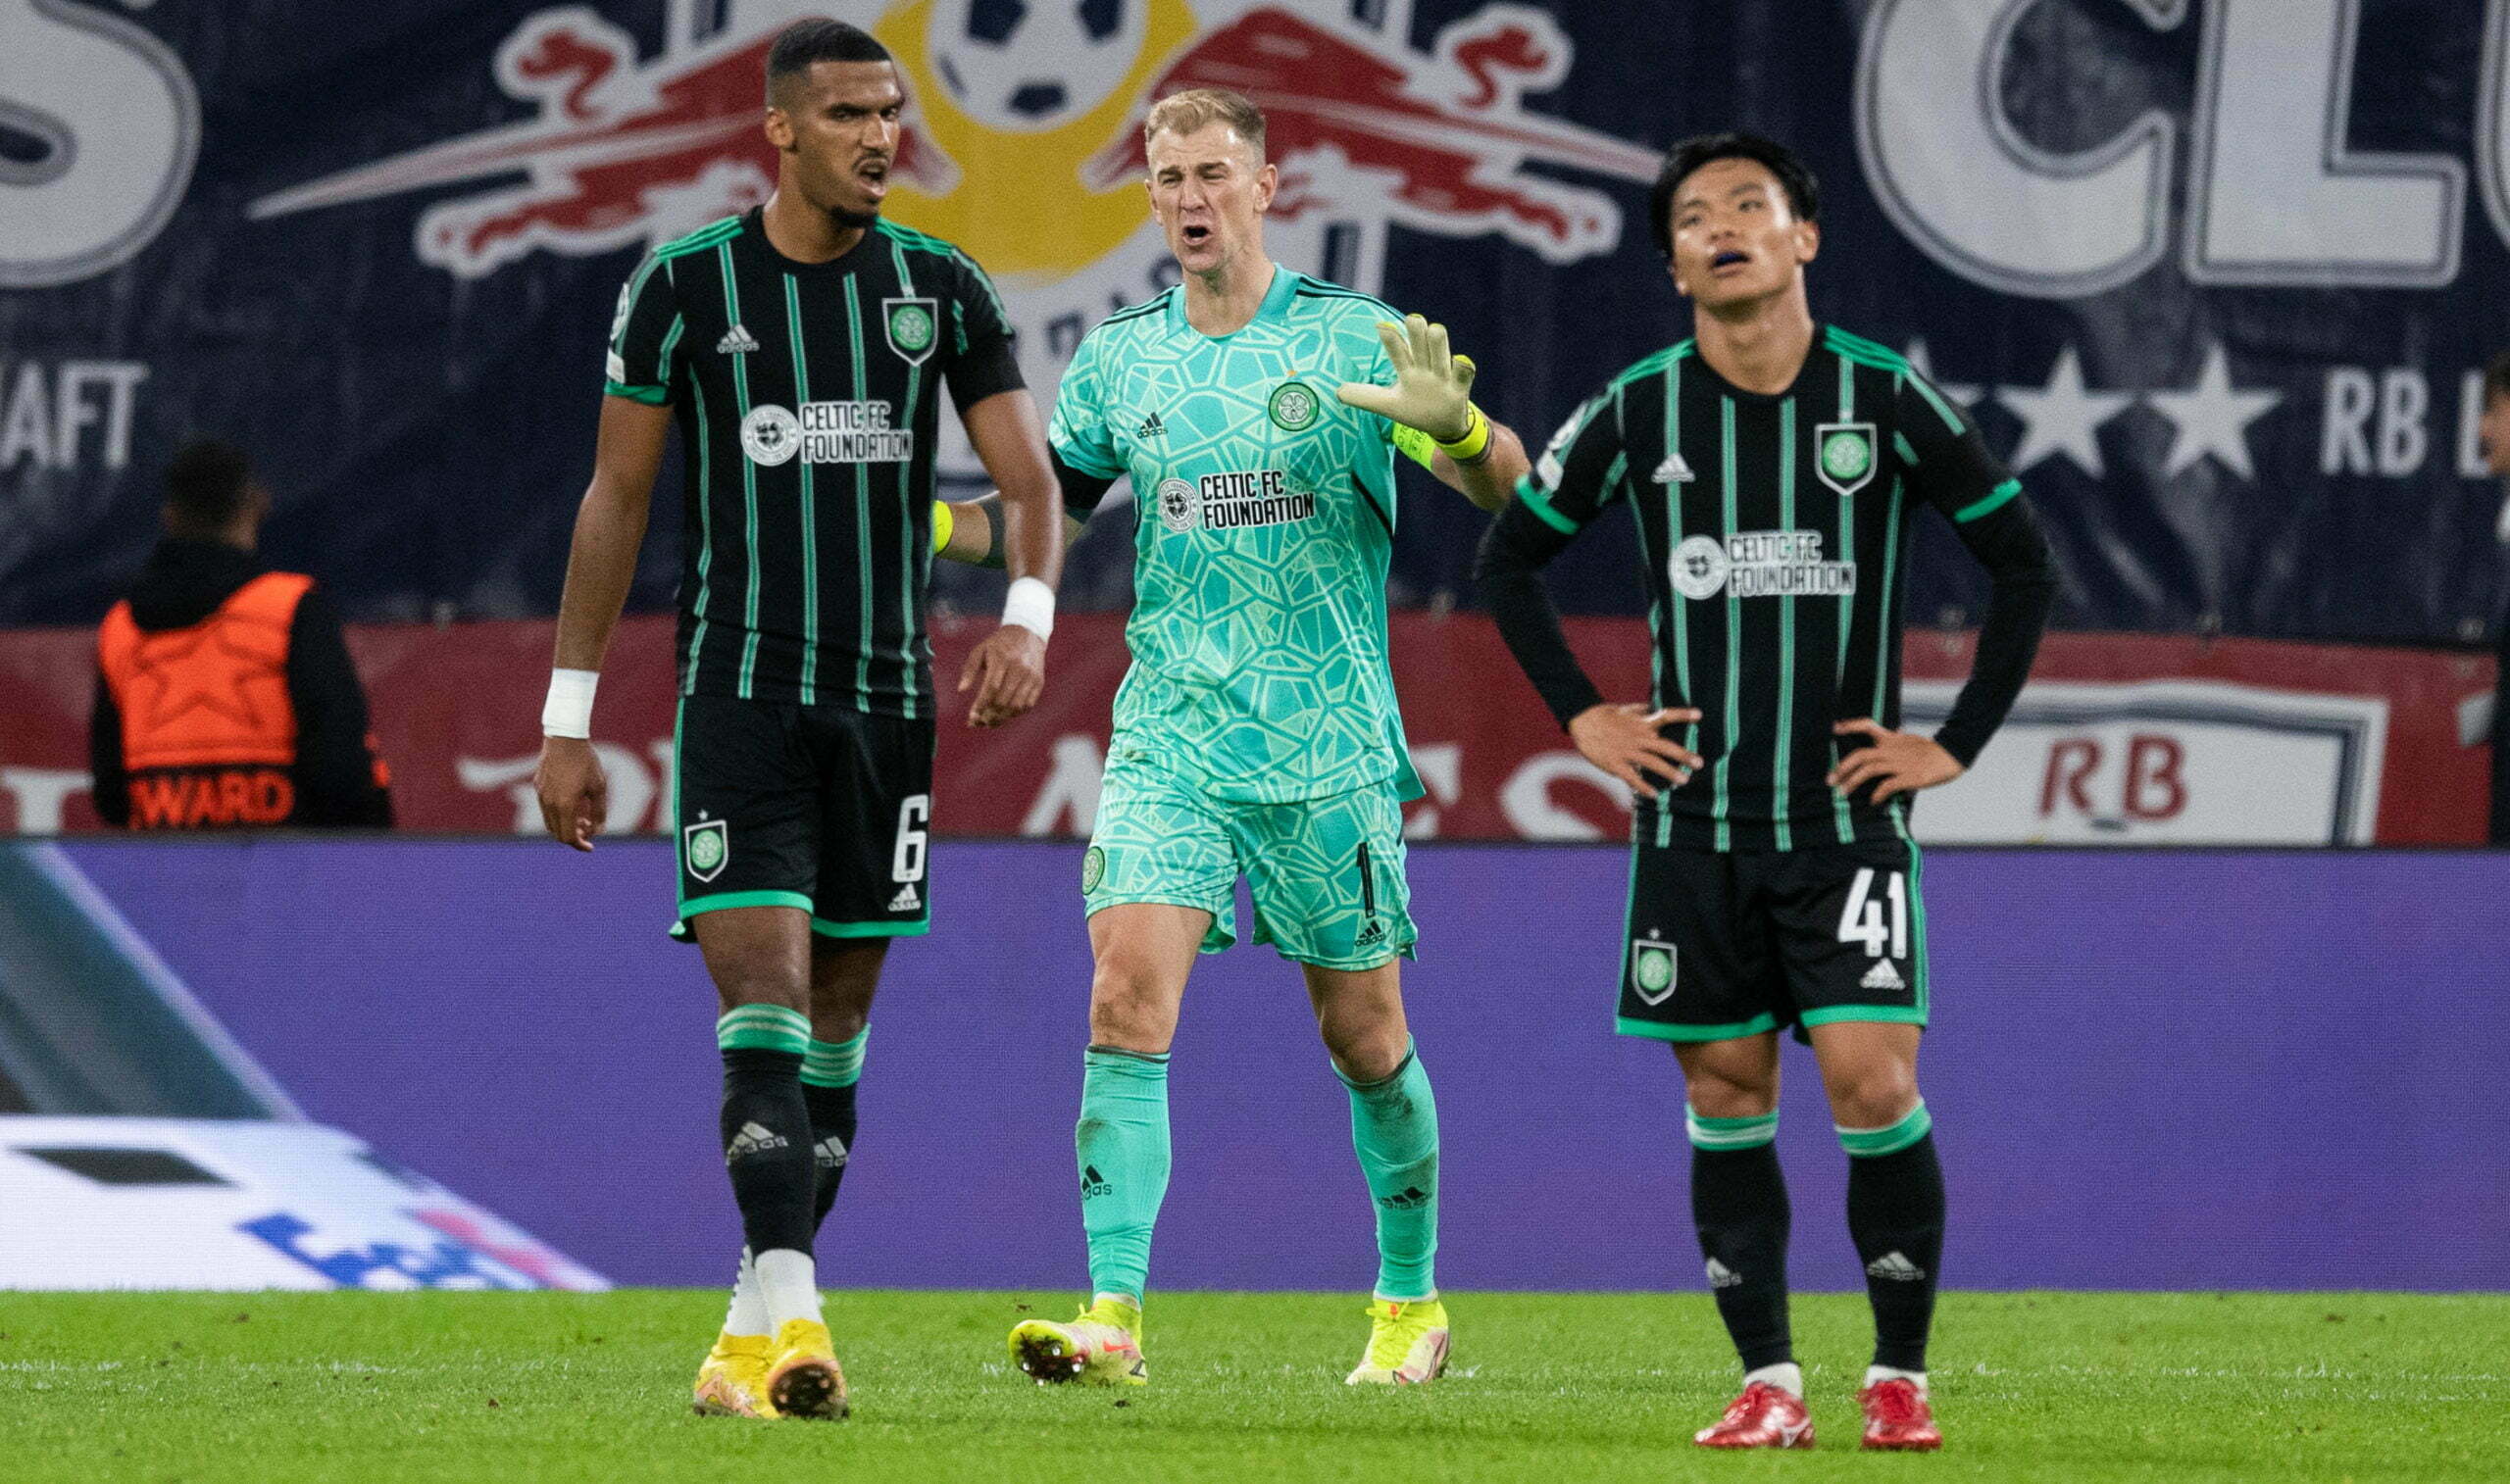 RB Leipzig 3-1 Celtic – Full Time Report